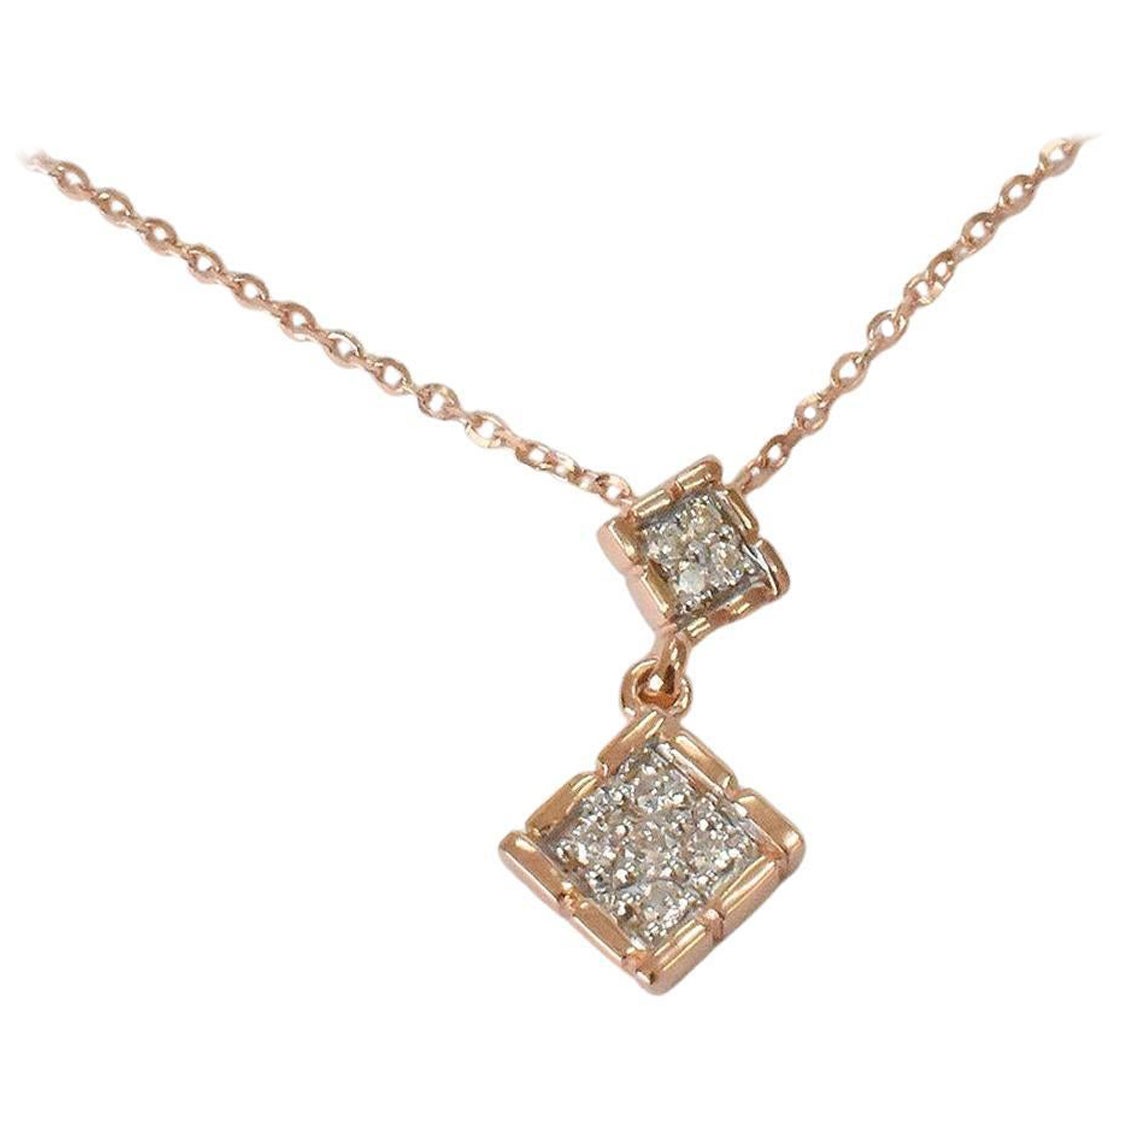 Square Charm Diamond Necklace ist aus 18k massivem Gold in drei Farben von Gold, Rose Gold / Weißgold / Gelbgold zur Verfügung gestellt.

Sie sind leicht und wunderschön und ein tolles Geschenk für jeden auf Ihrer Liste. Perfekt für das tägliche